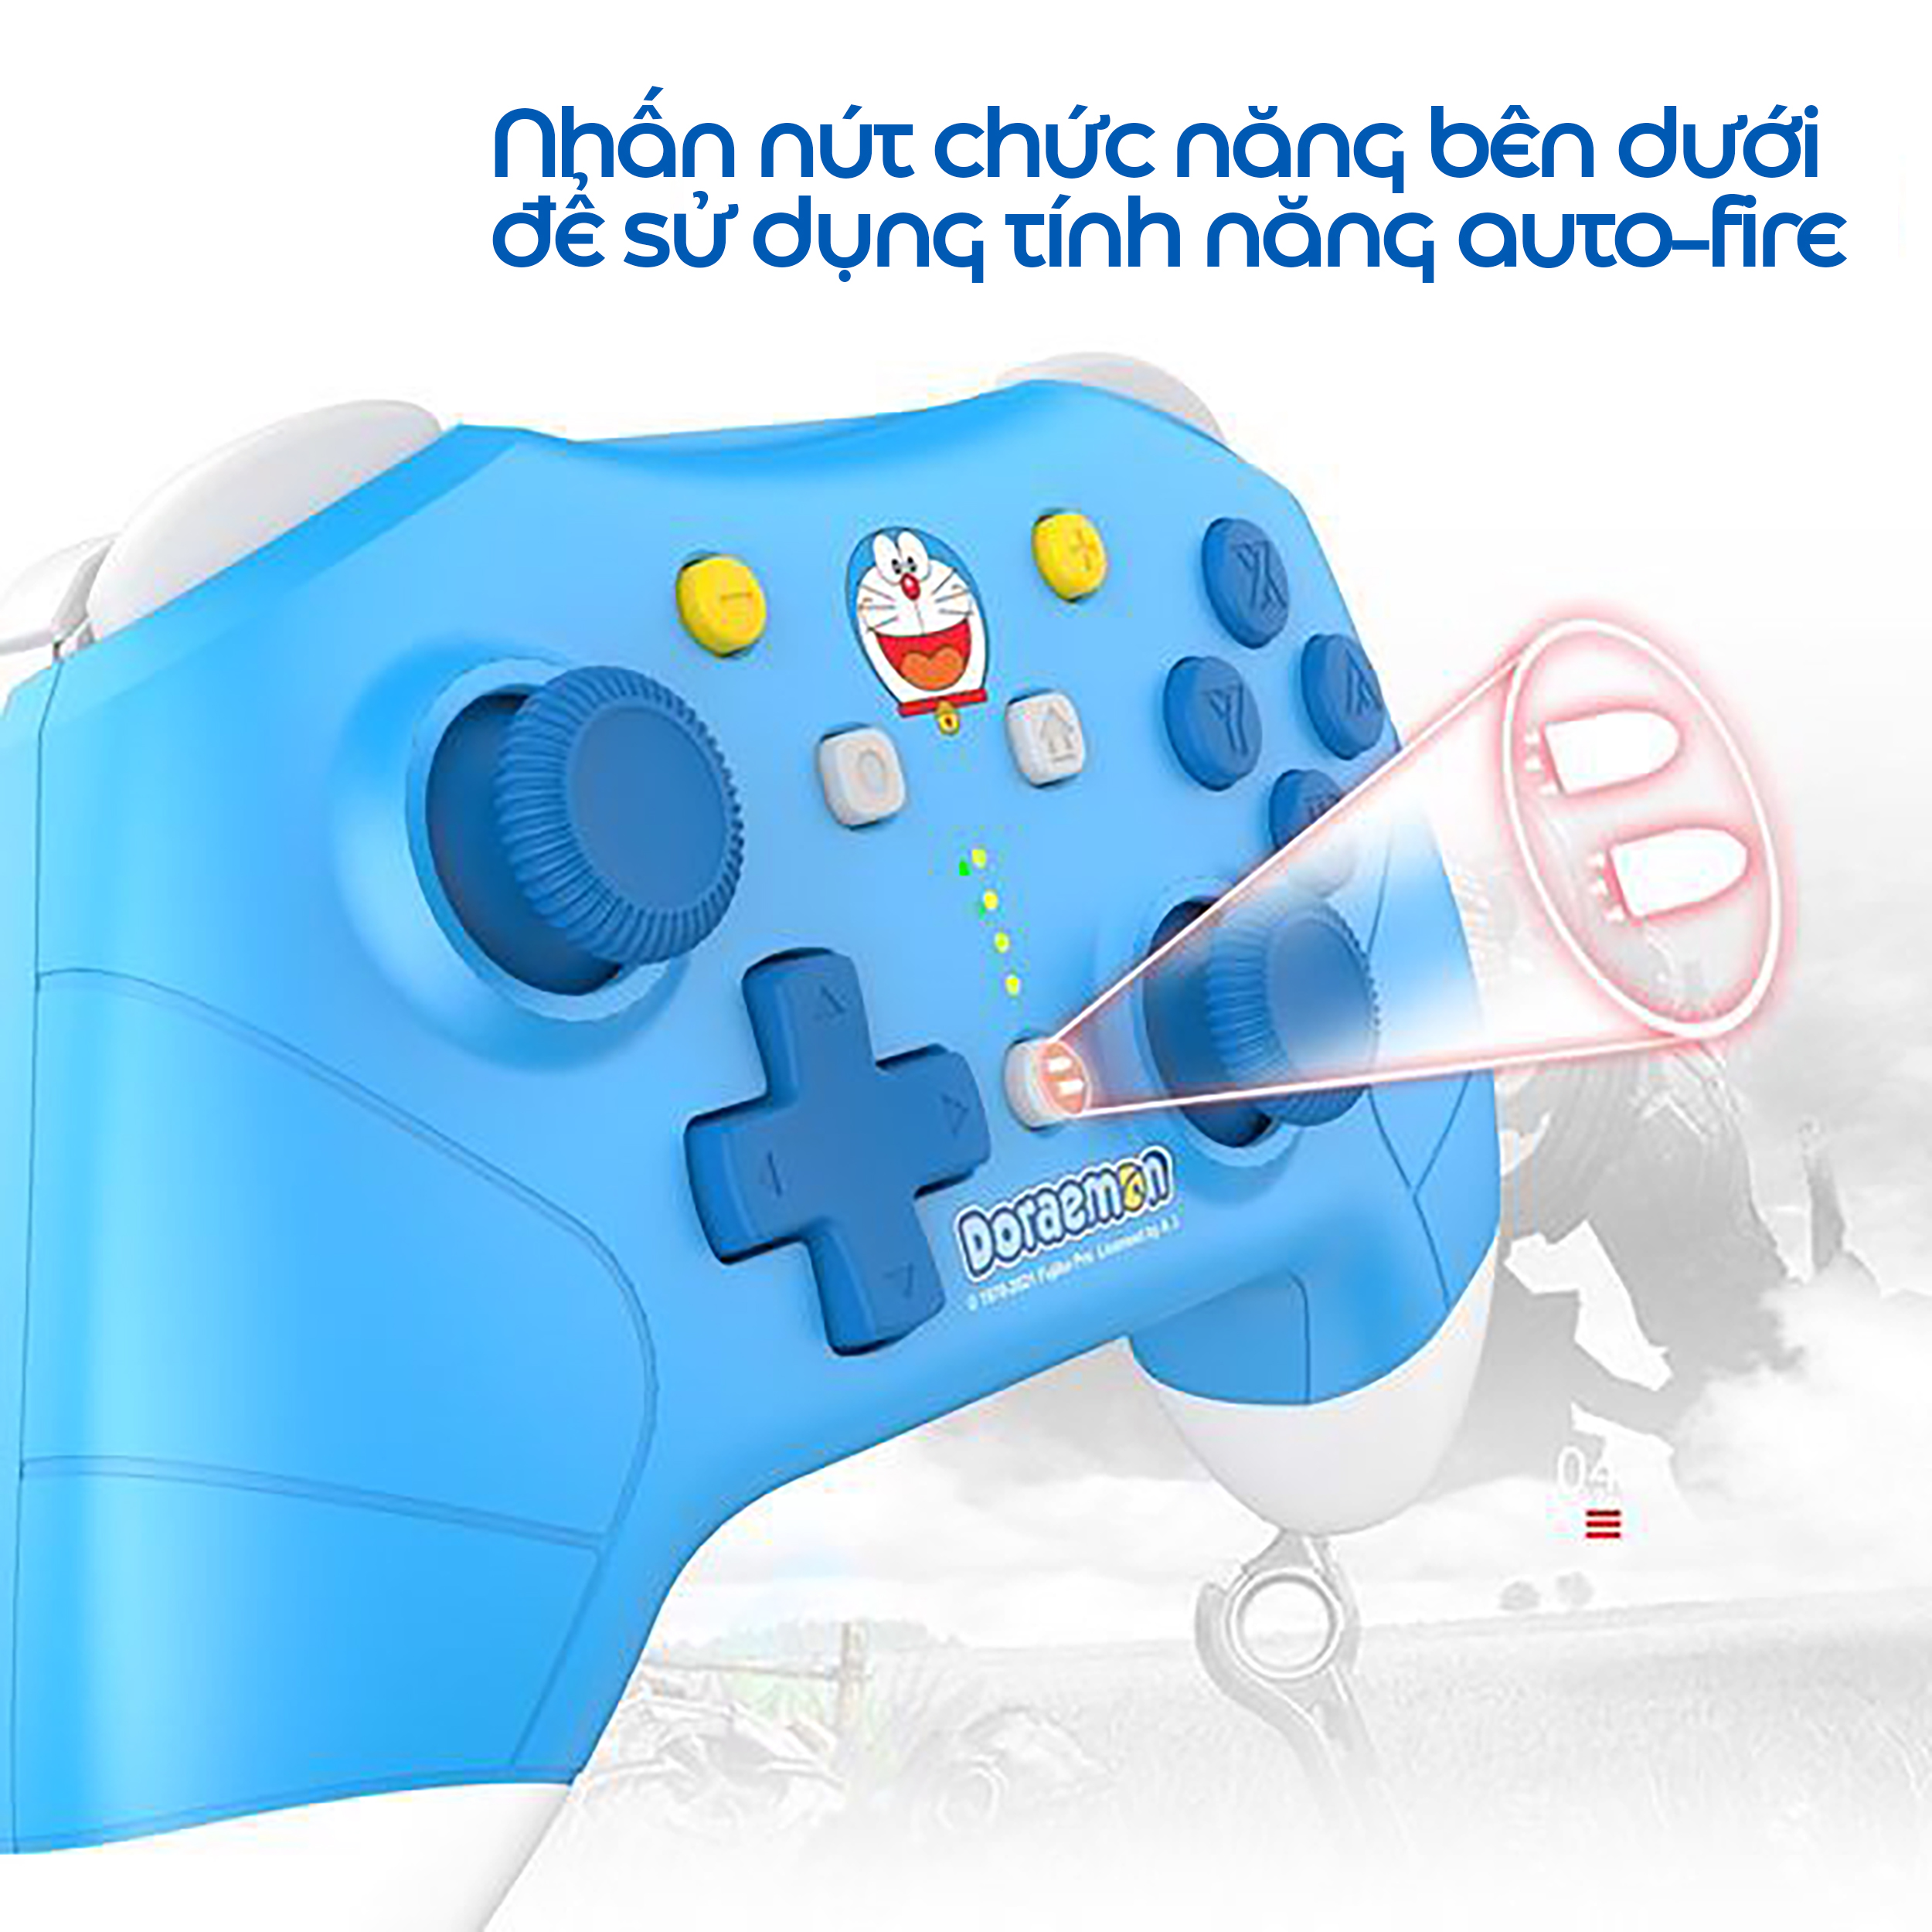 Tay cầm chơi game không dây IINE Pro Controller cho Nintendo Switch/PC, Doraemon